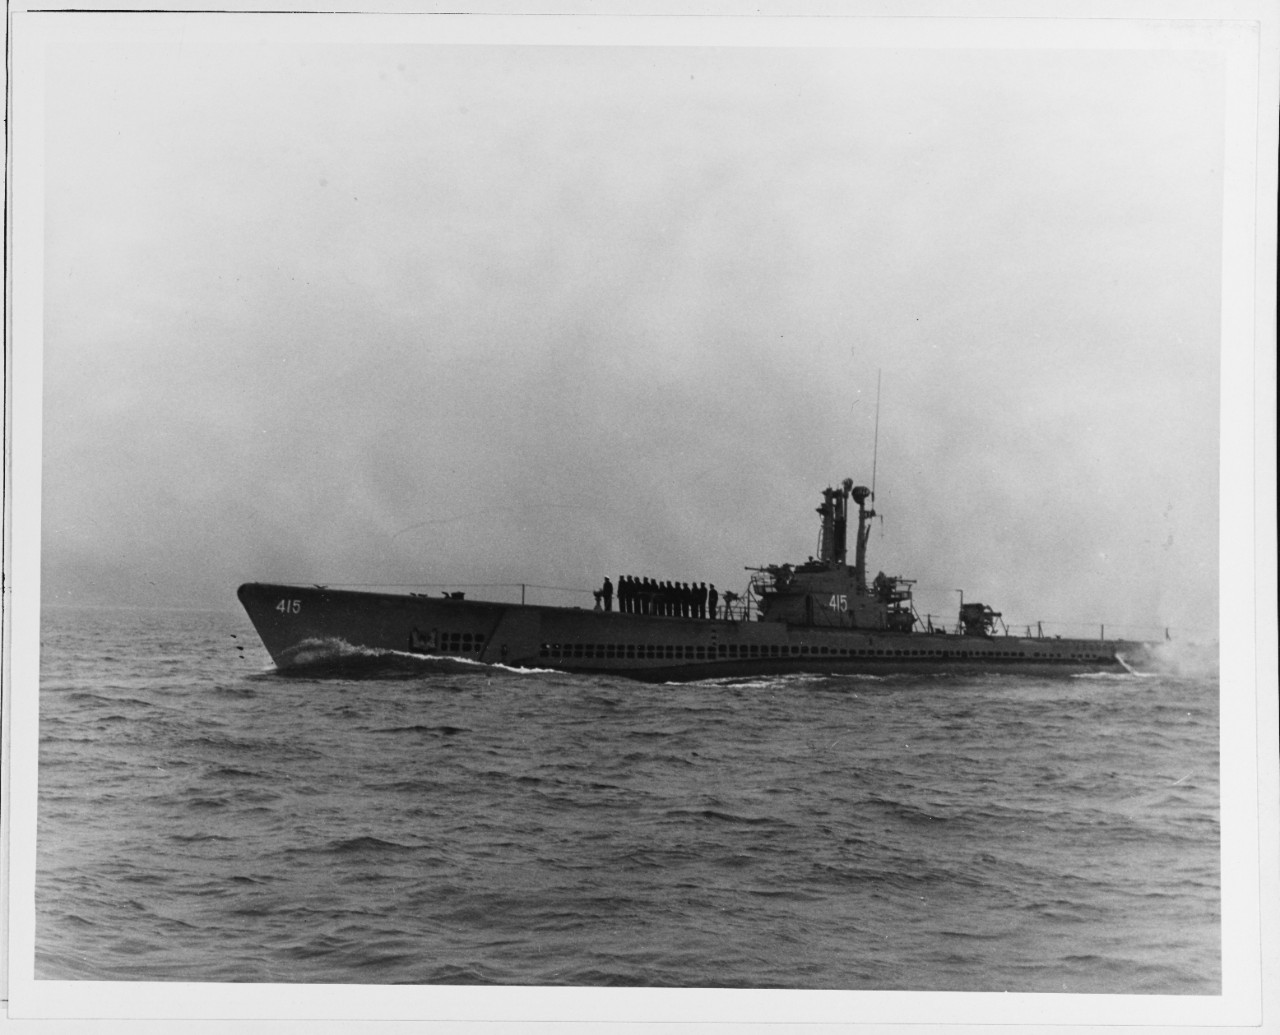 USS STICLEBACK (SS 415)